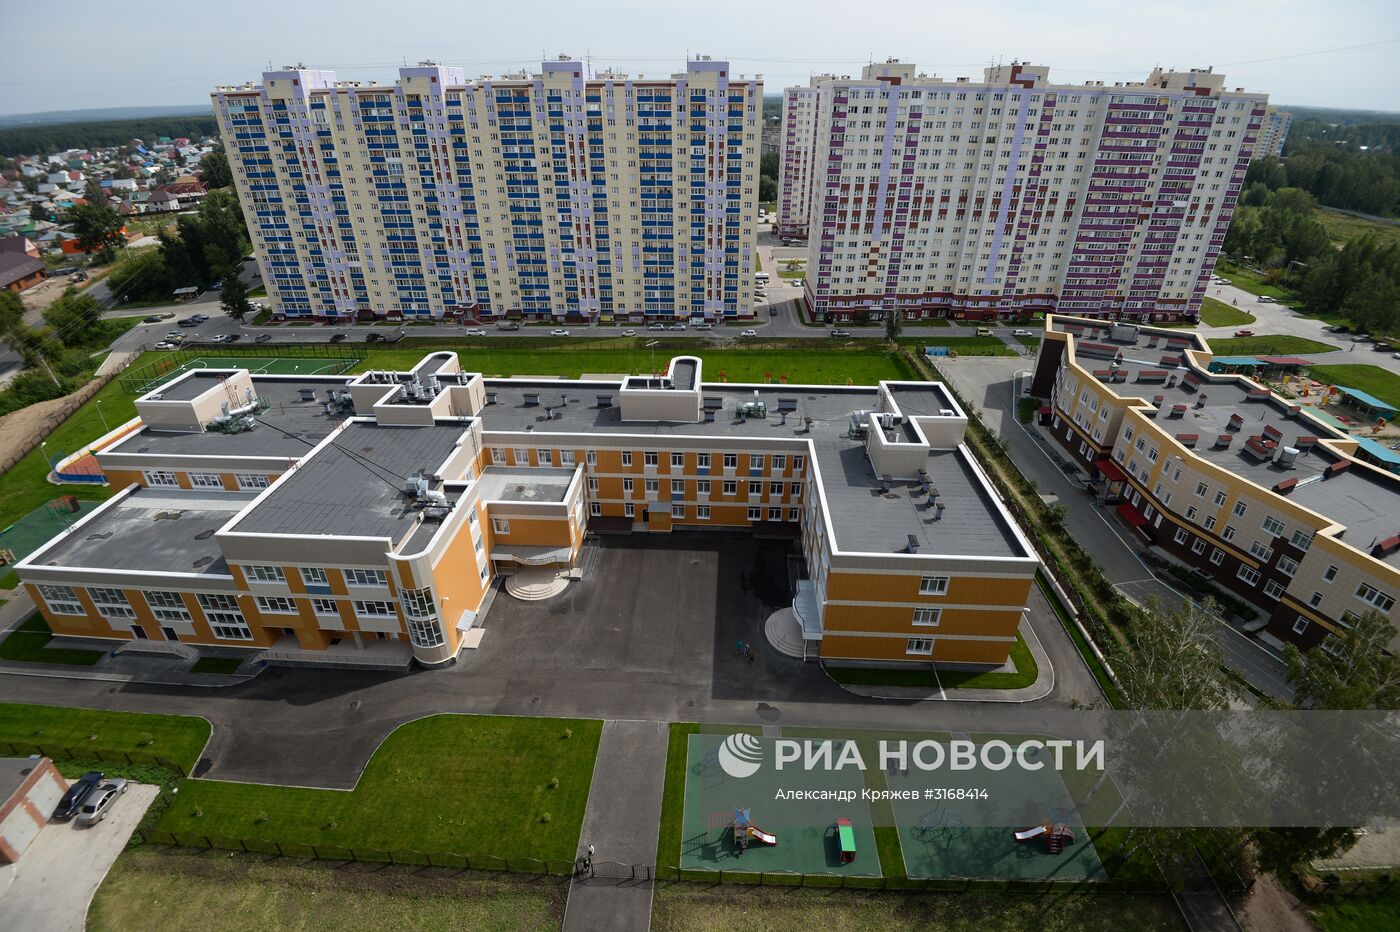 Подготовка школ Новосибирской области к учебному году